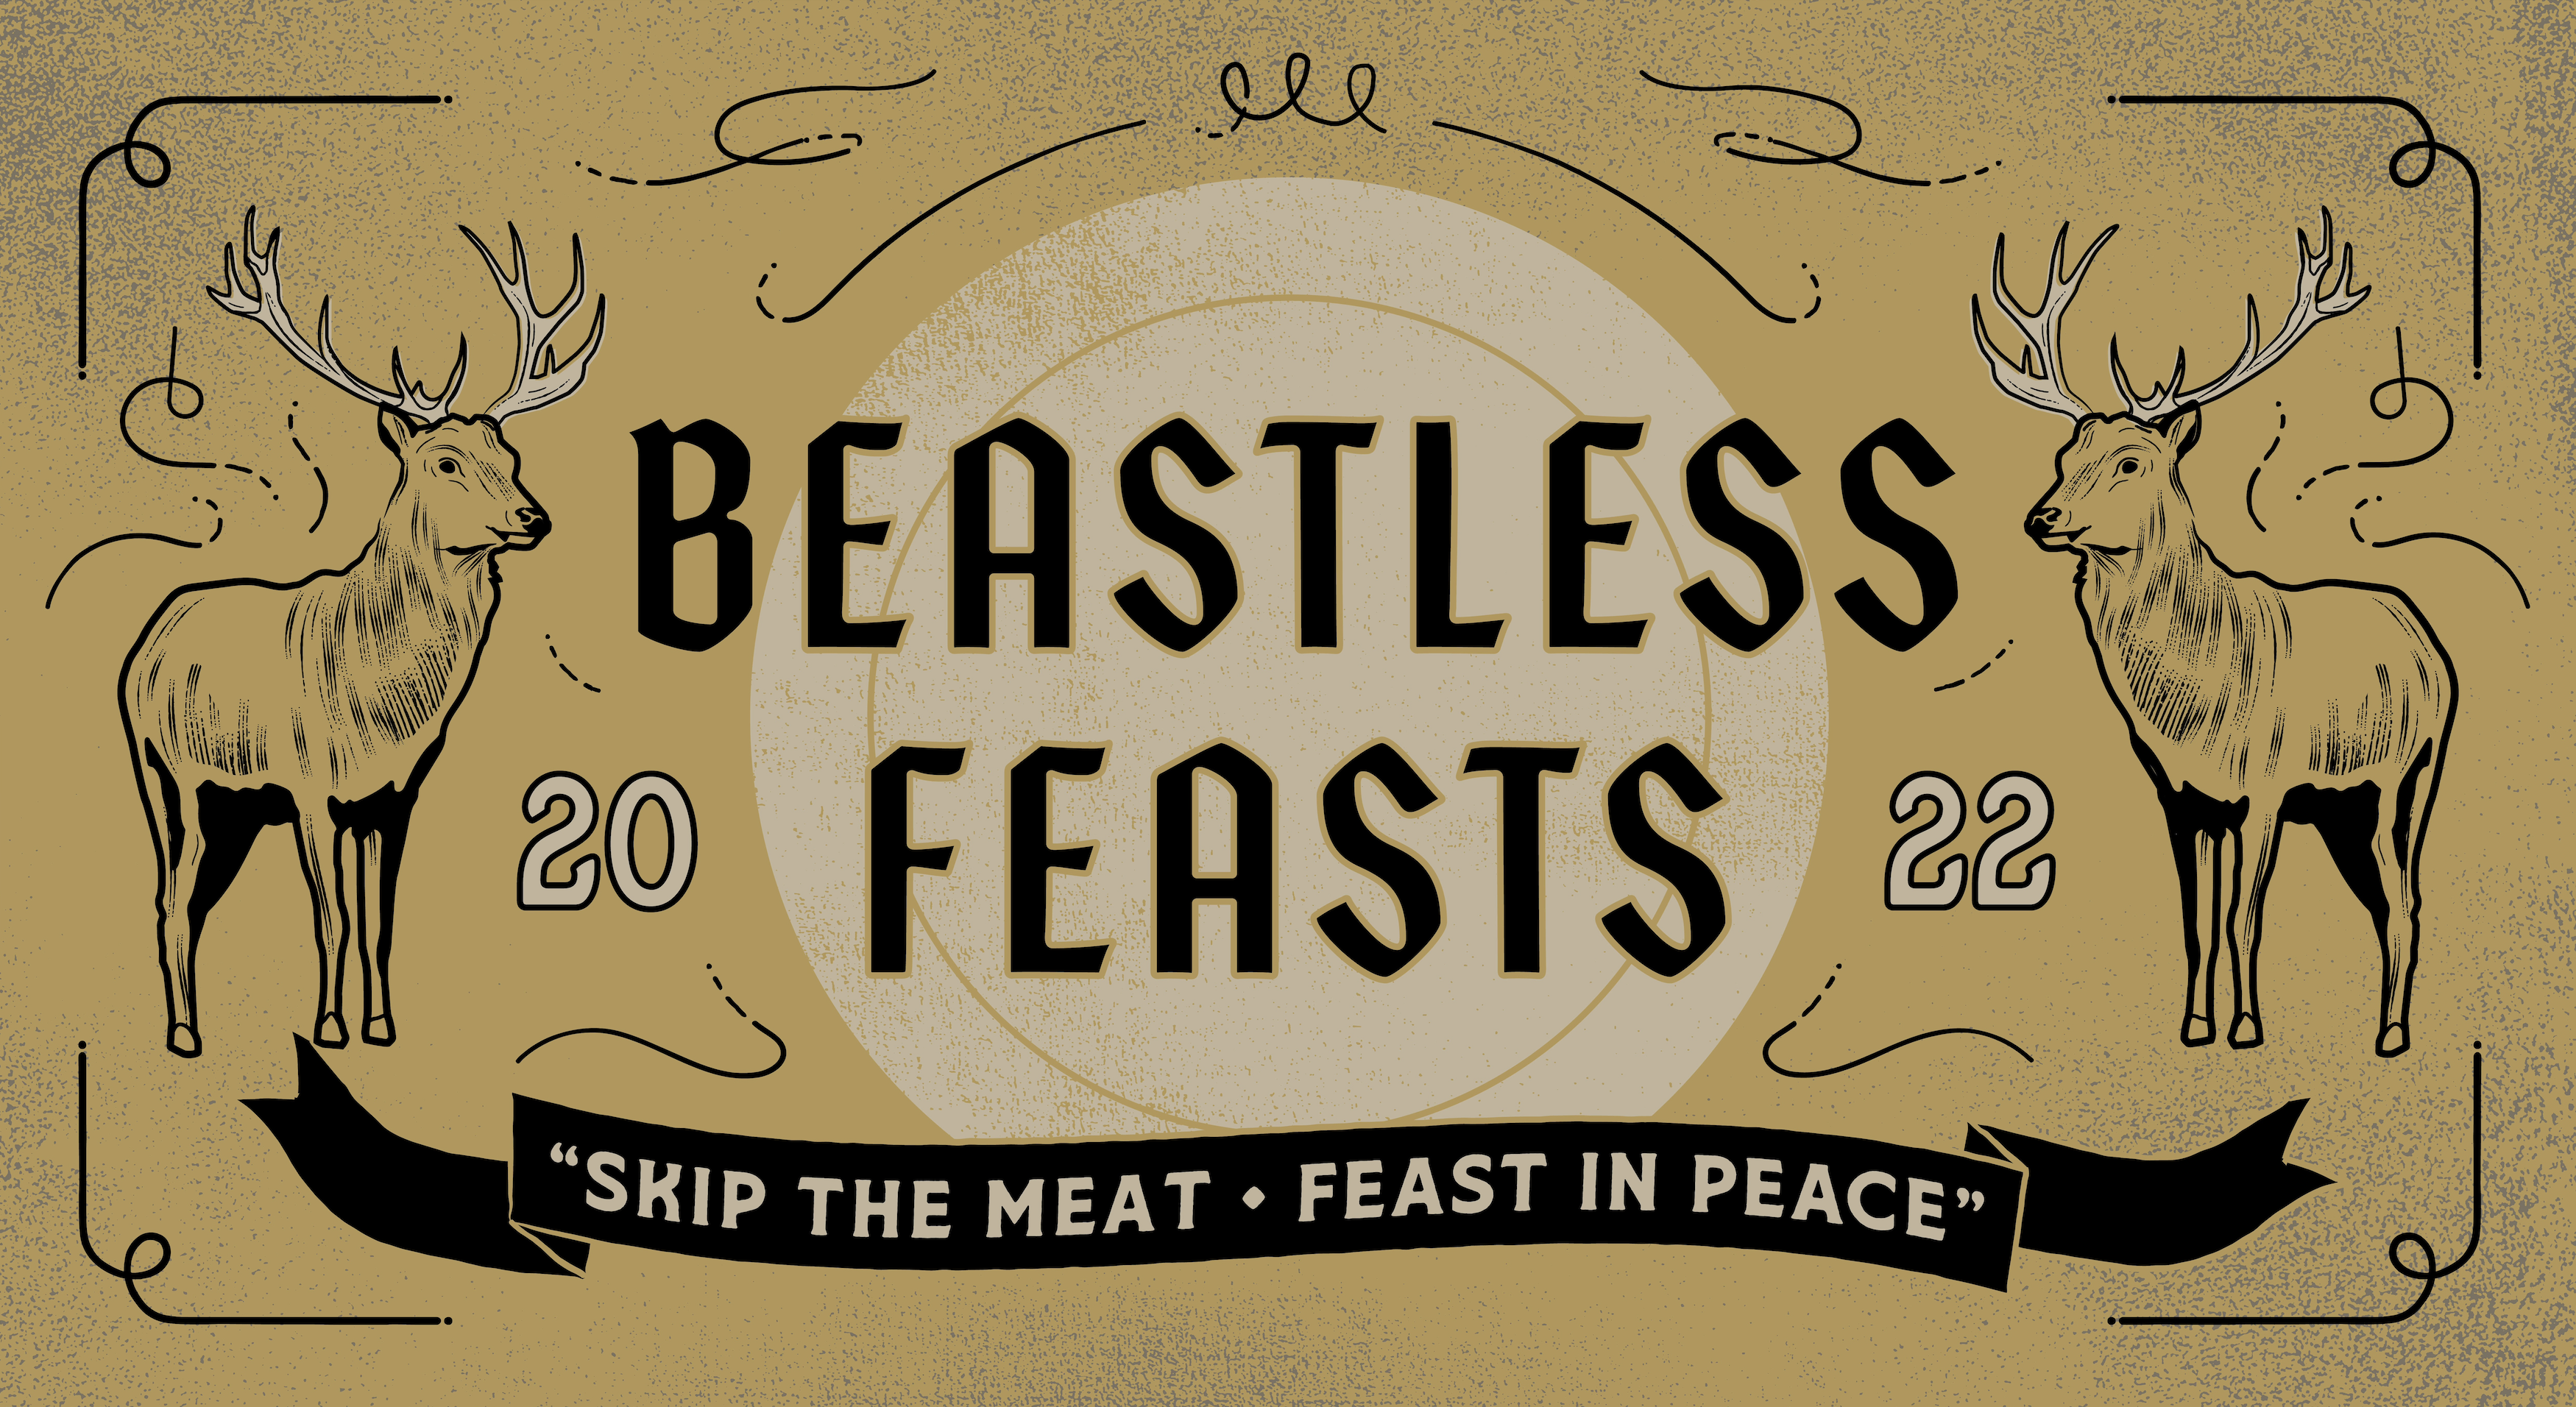 Beastless Feasts